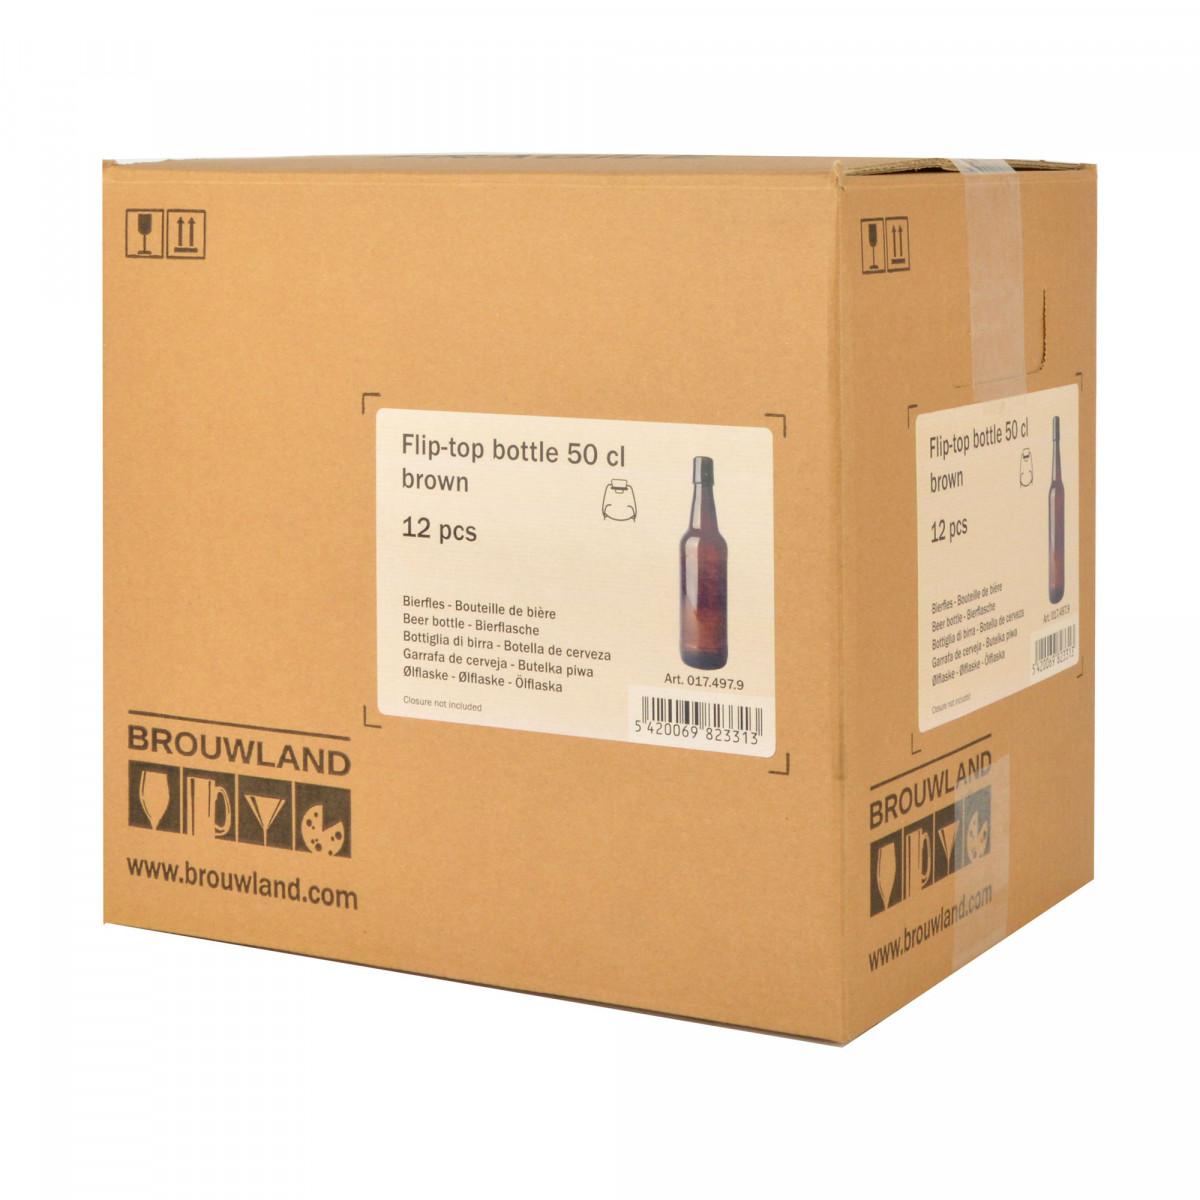 Flip-top bottle 50 cl brown, without flip-top, box 12 pcs